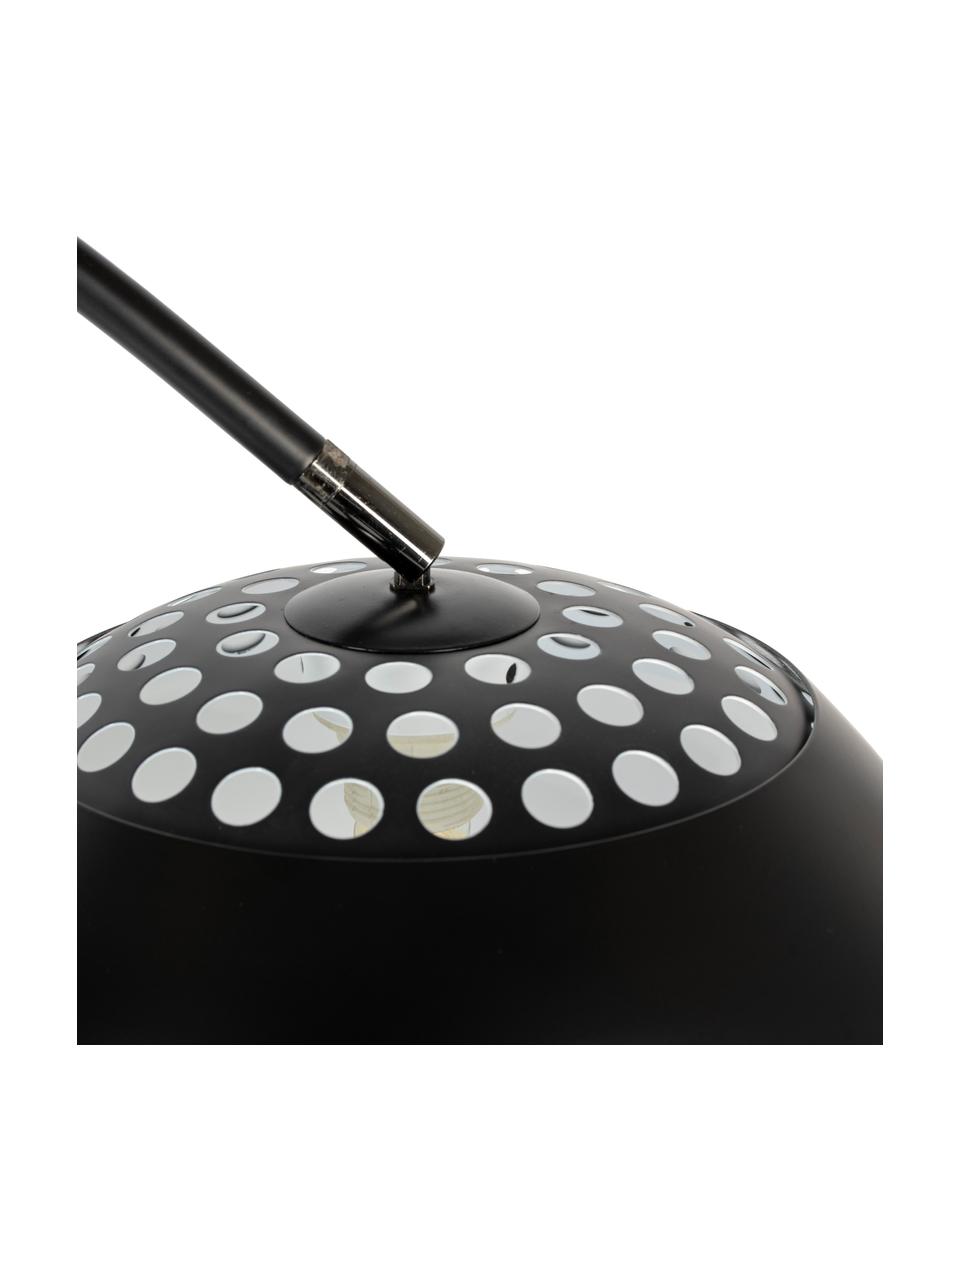 Grote booglamp Metal Bow in zwart, Lampenkap: geborsteld metaal, Frame: geborsteld metaal, Lampvoet: marmer met zwarte metalen, Zwart, B 170 x H 205 cm